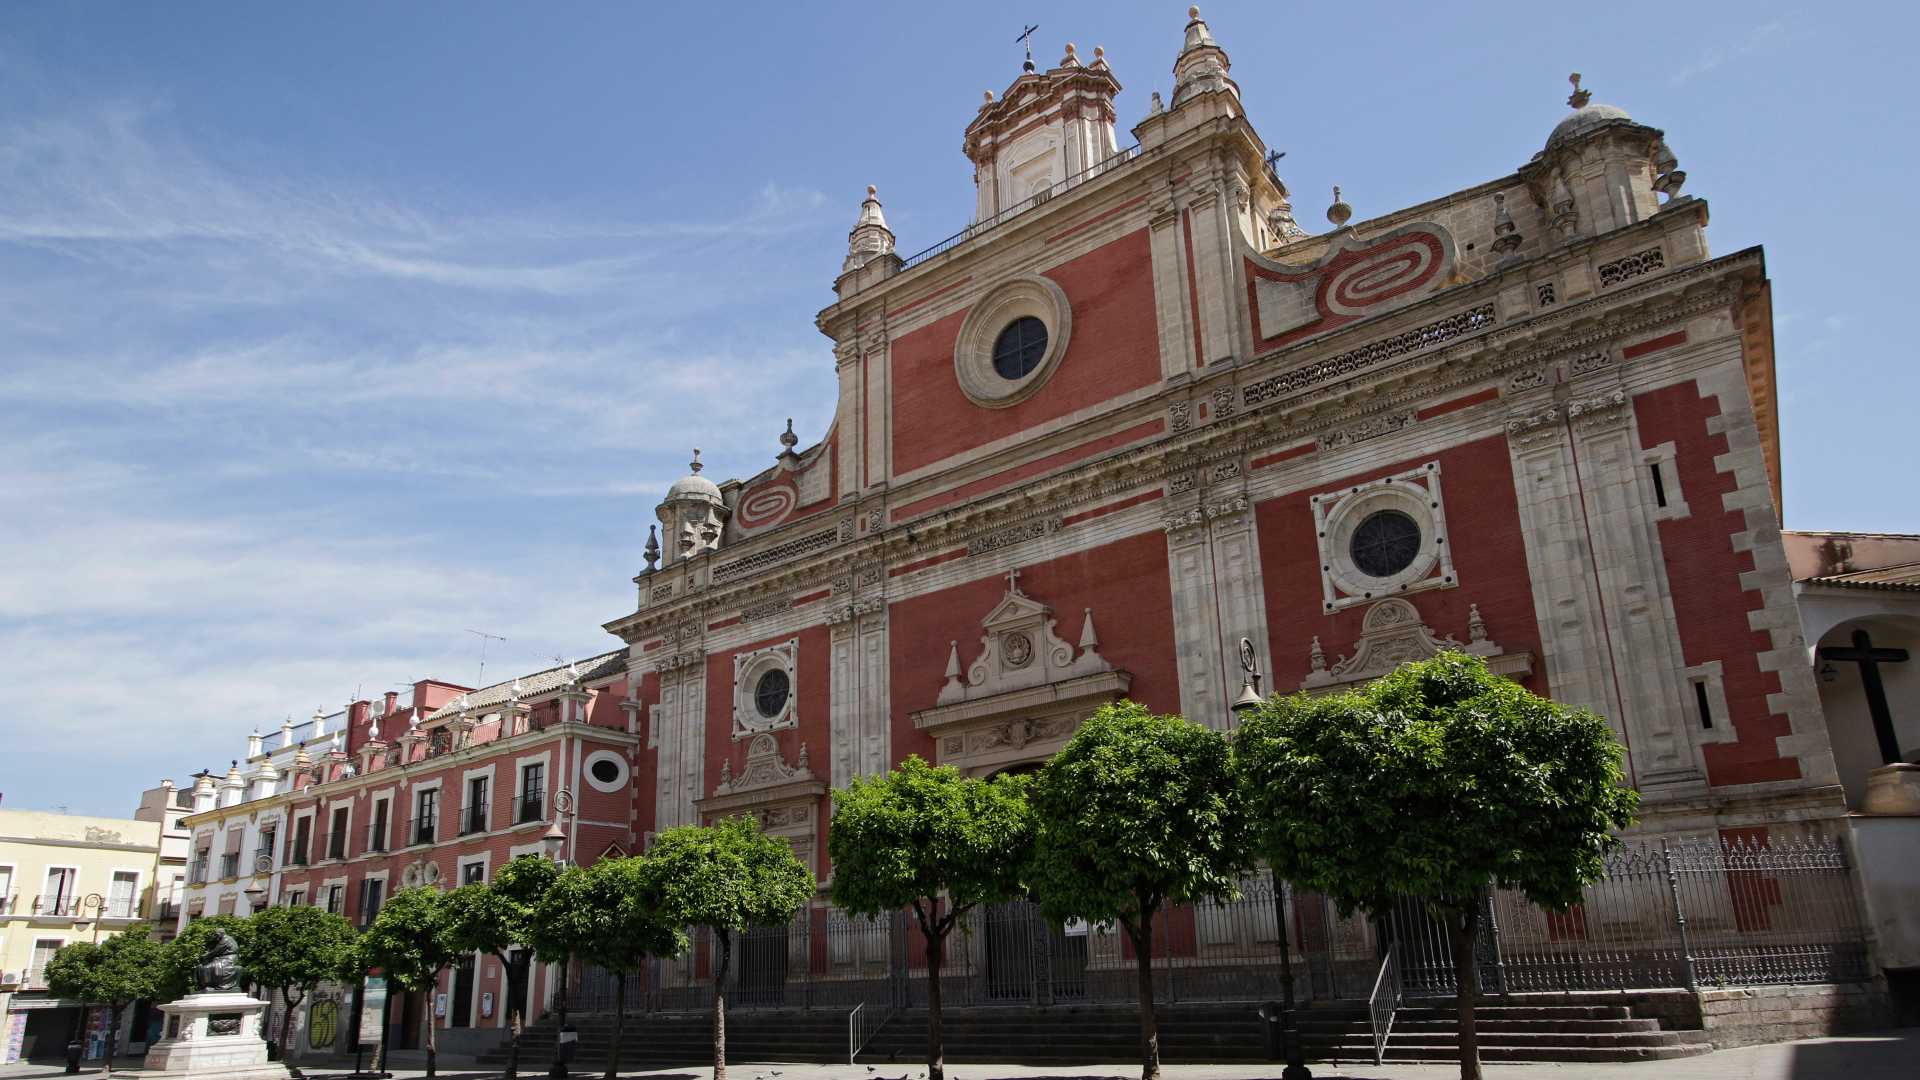 Dónde tapear cerca de los templos más populares de Sevilla